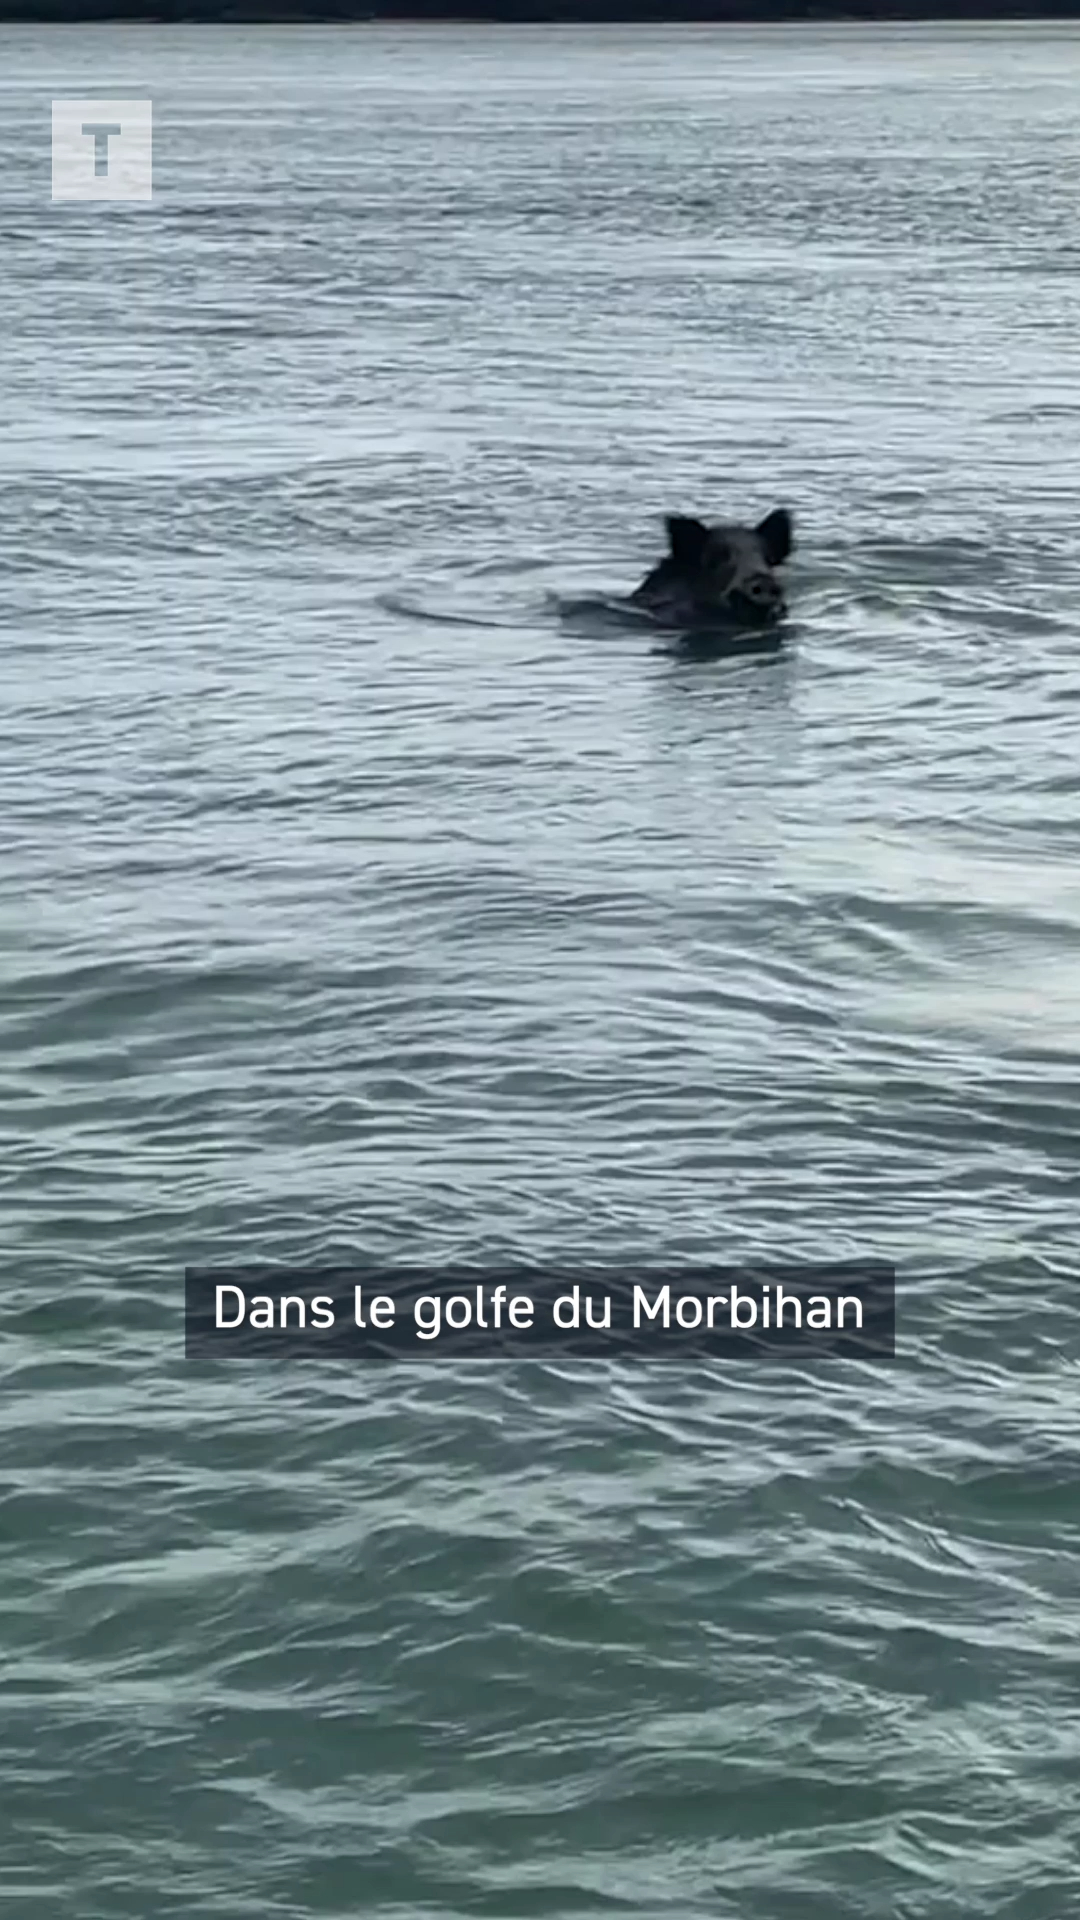 Dans le golfe du Morbihan, il filme un sanglier qui rejoint Gavrinis à la nage [Vidéo]